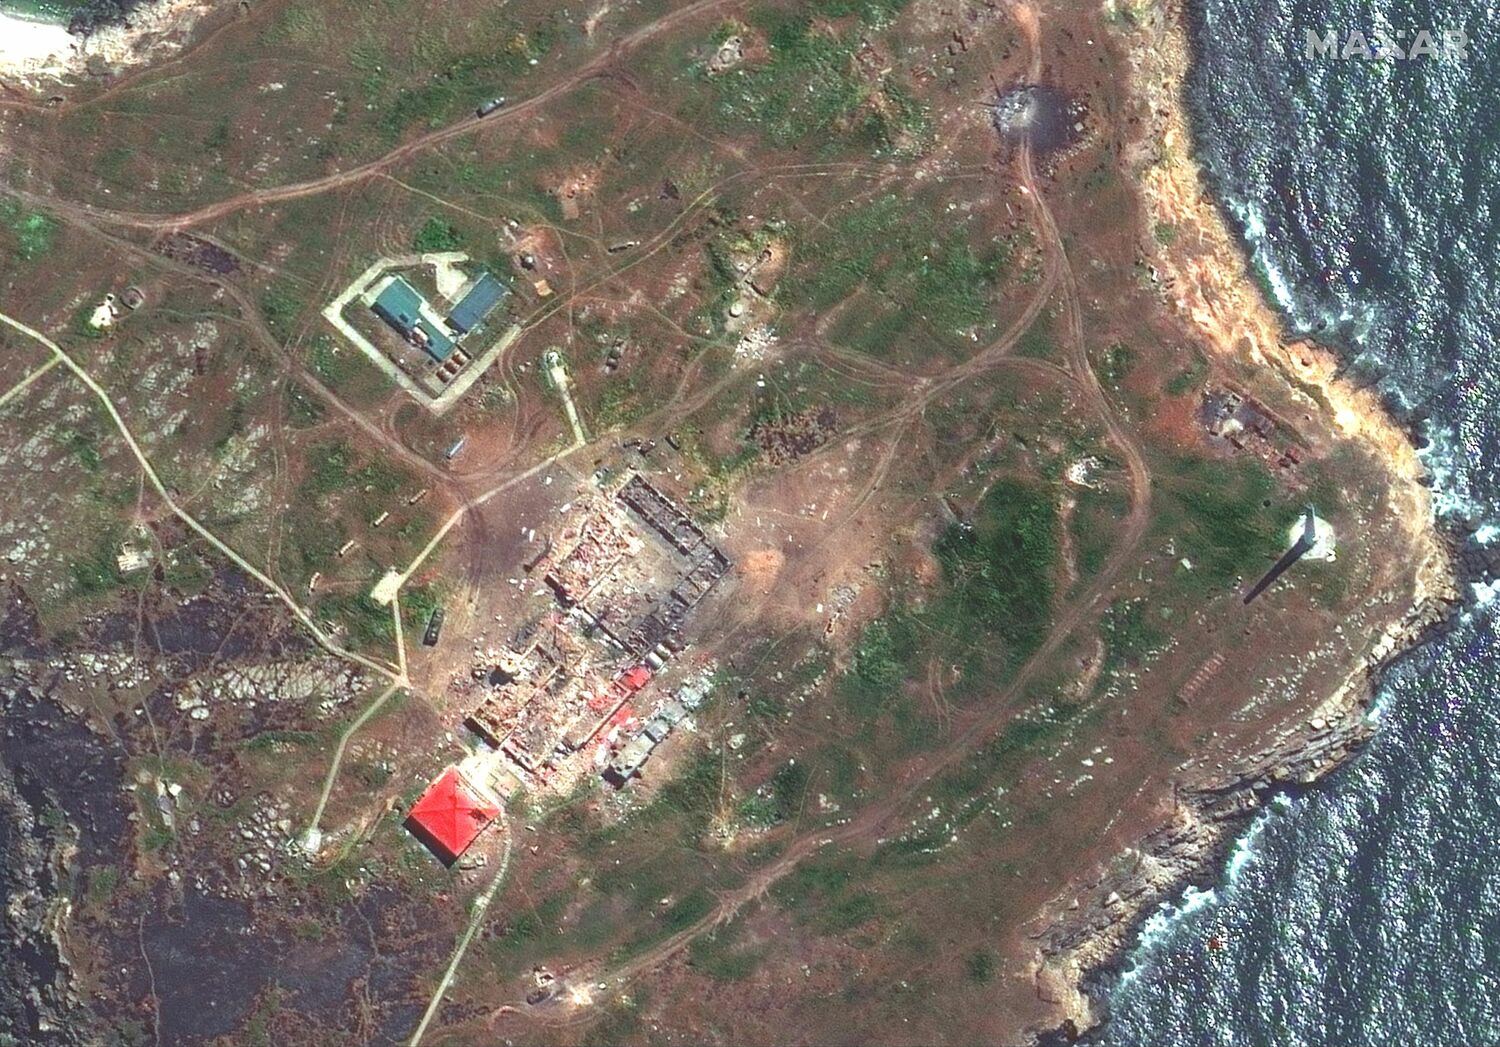 衛星圖像顯示5月12日在蛇島受損的直升機。   圖 : 翻攝自MAXAR